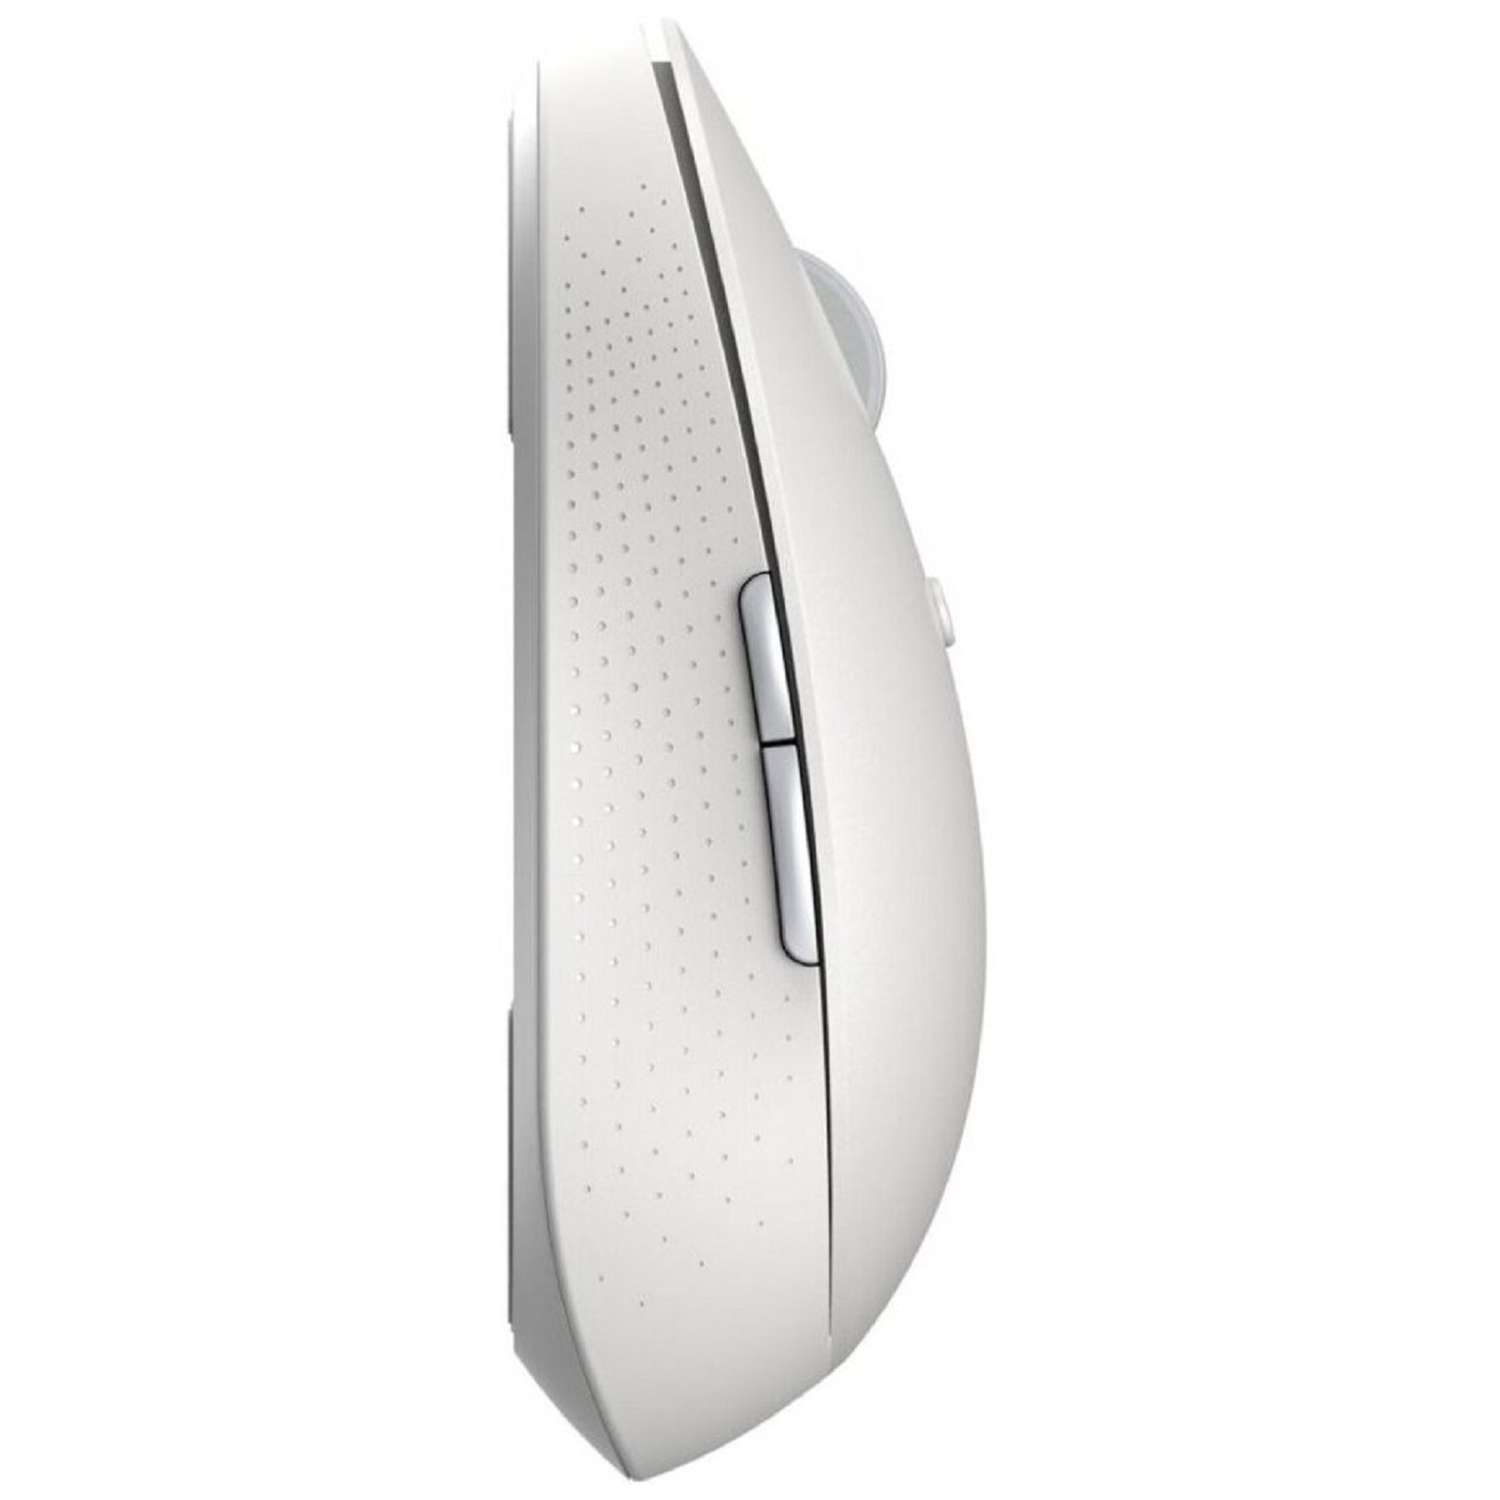 Мышь XIAOMI Mi Dual Mode Wireless Mouse Silent Edition беспроводная 1300 dpi usb белая - фото 5